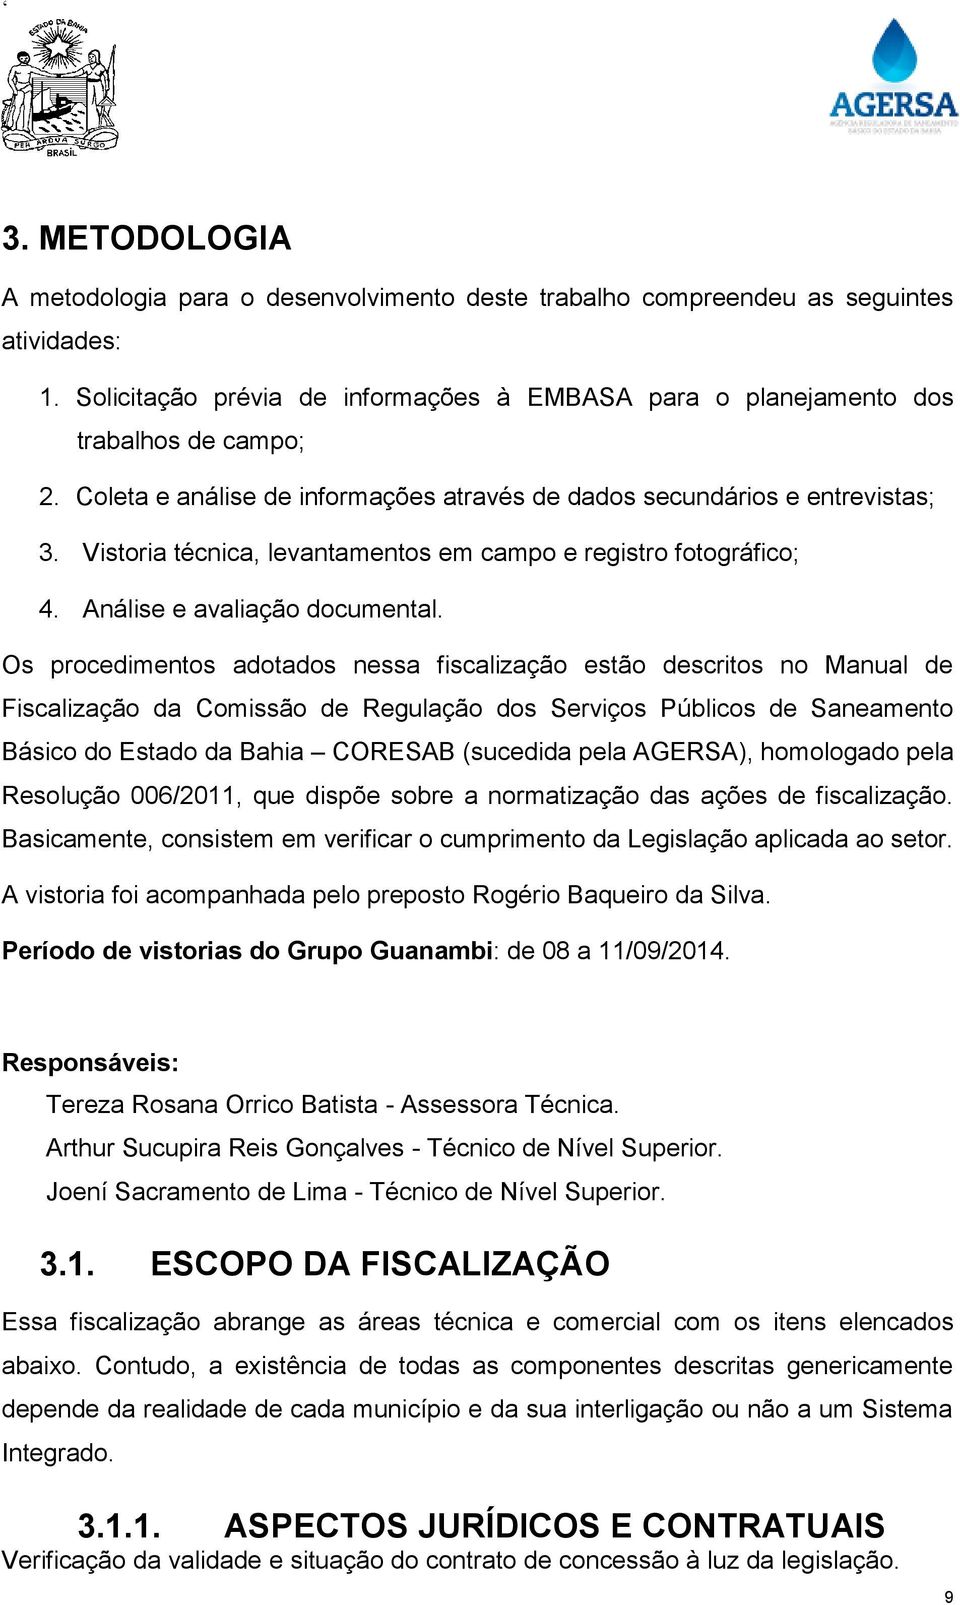 Os procedimentos adotados nessa fiscalização estão descritos no Manual de Fiscalização da Comissão de Regulação dos Serviços Públicos de Saneamento Básico do Estado da Bahia CORESAB (sucedida pela